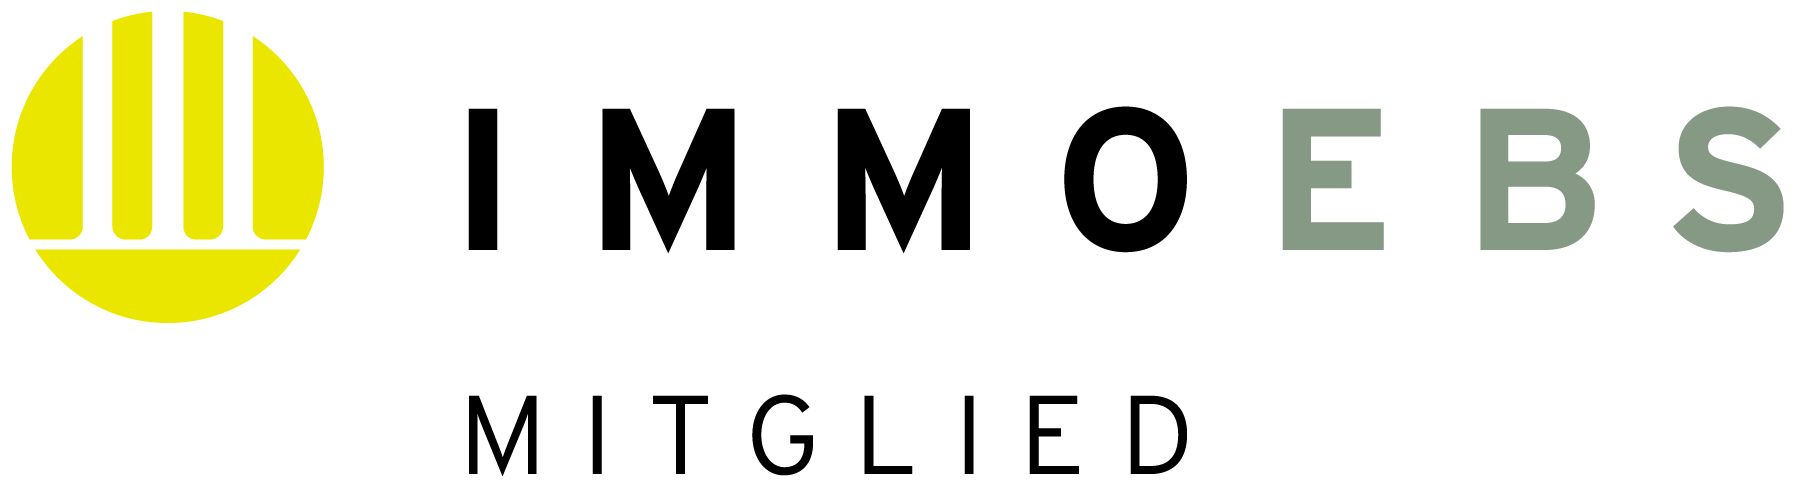 IMMOEBS Mitglieder-Logo.1_Immoebs_Mitglied-Logo_300dpi_CMYK.jpg